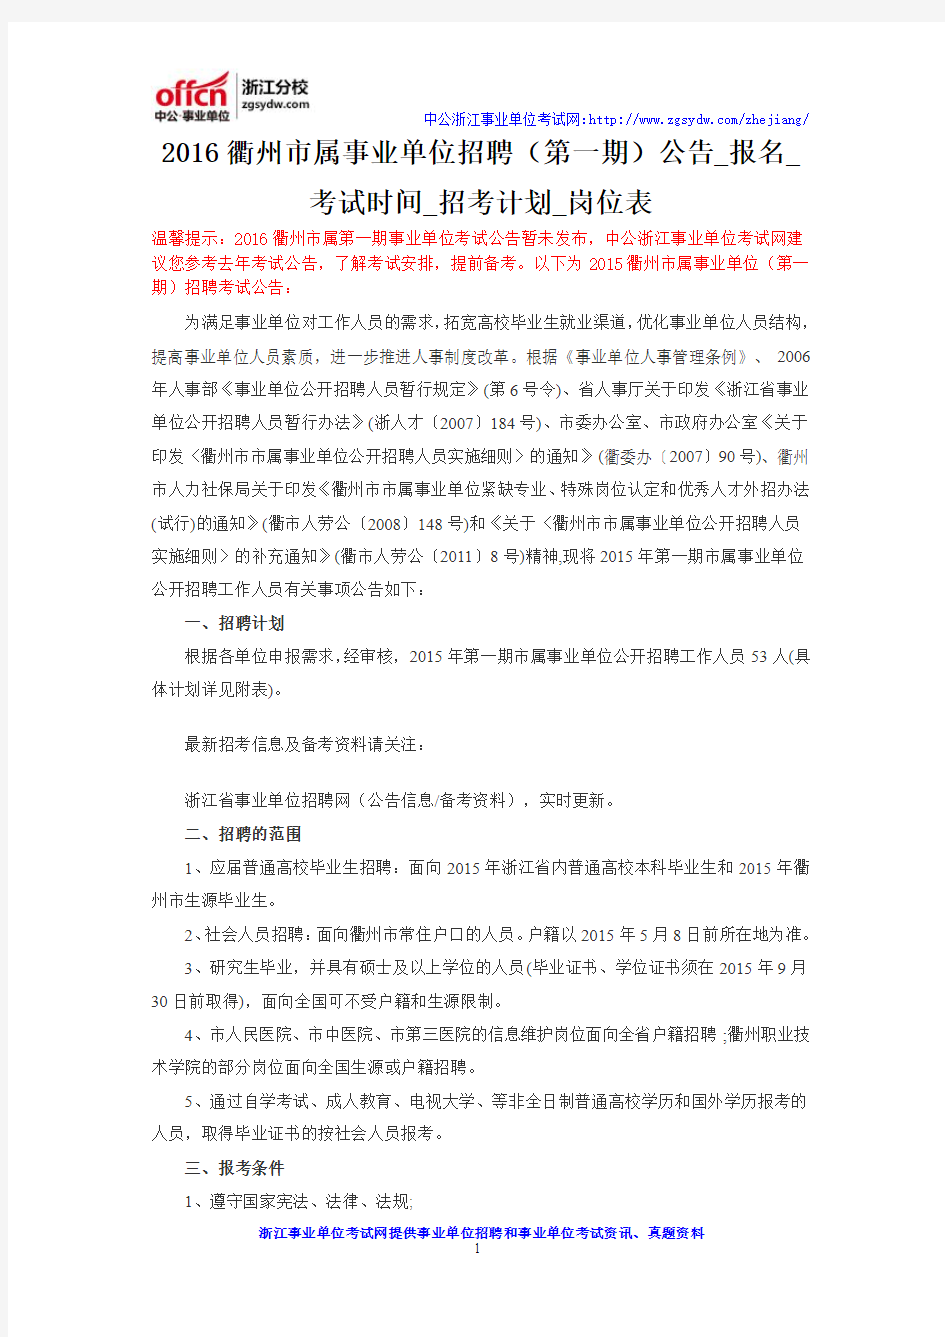 2016衢州市属事业单位招聘(第一期)公告_报名_考试时间_招考计划_岗位表